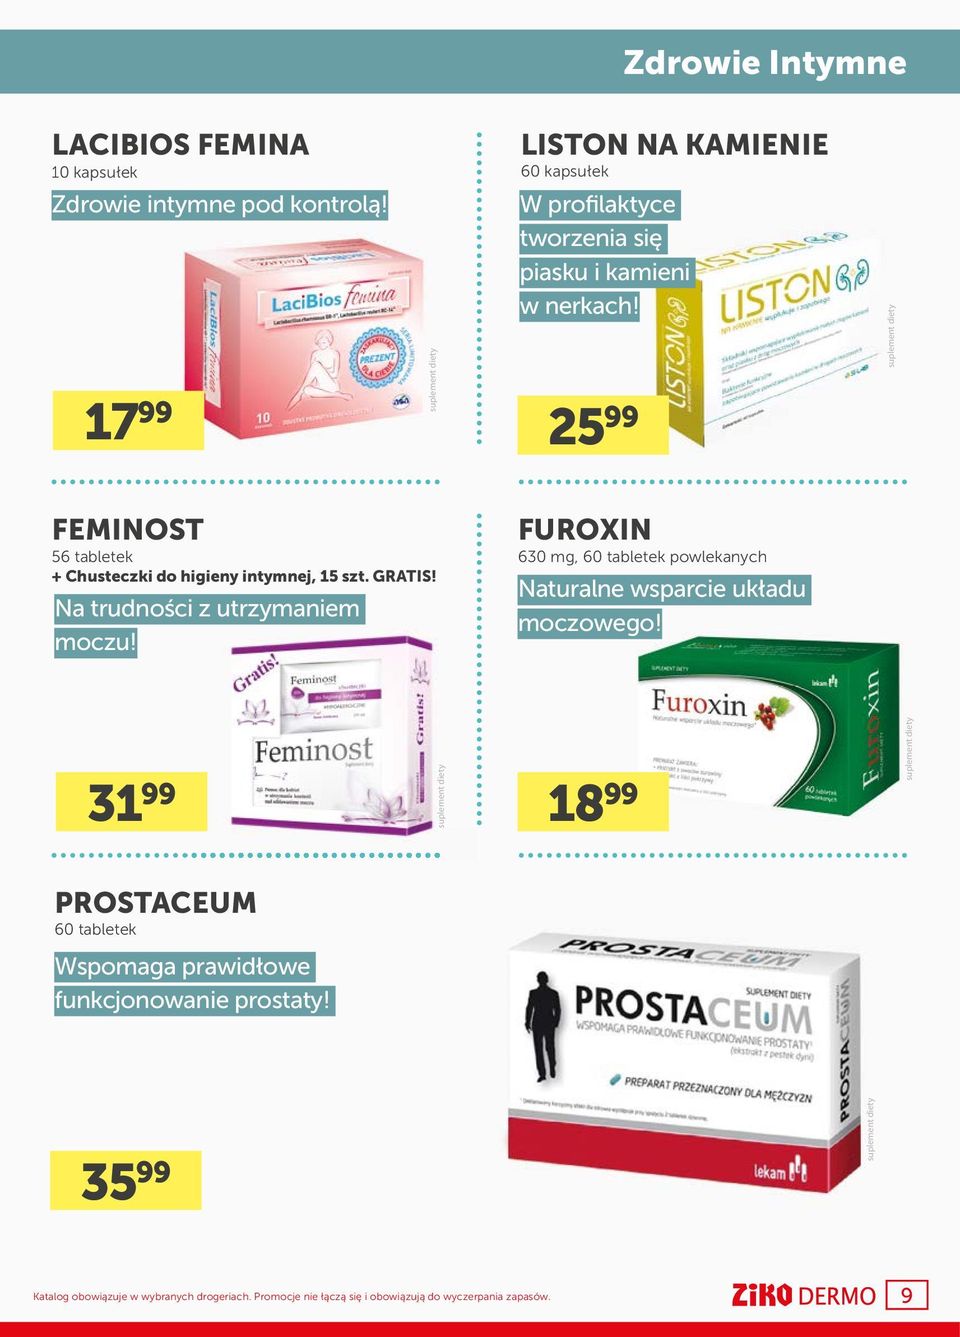 25 99 FEMINOST 56 tabletek + Chusteczki do higieny intymnej, 15 szt. GRATIS! Na trudności z utrzymaniem moczu!